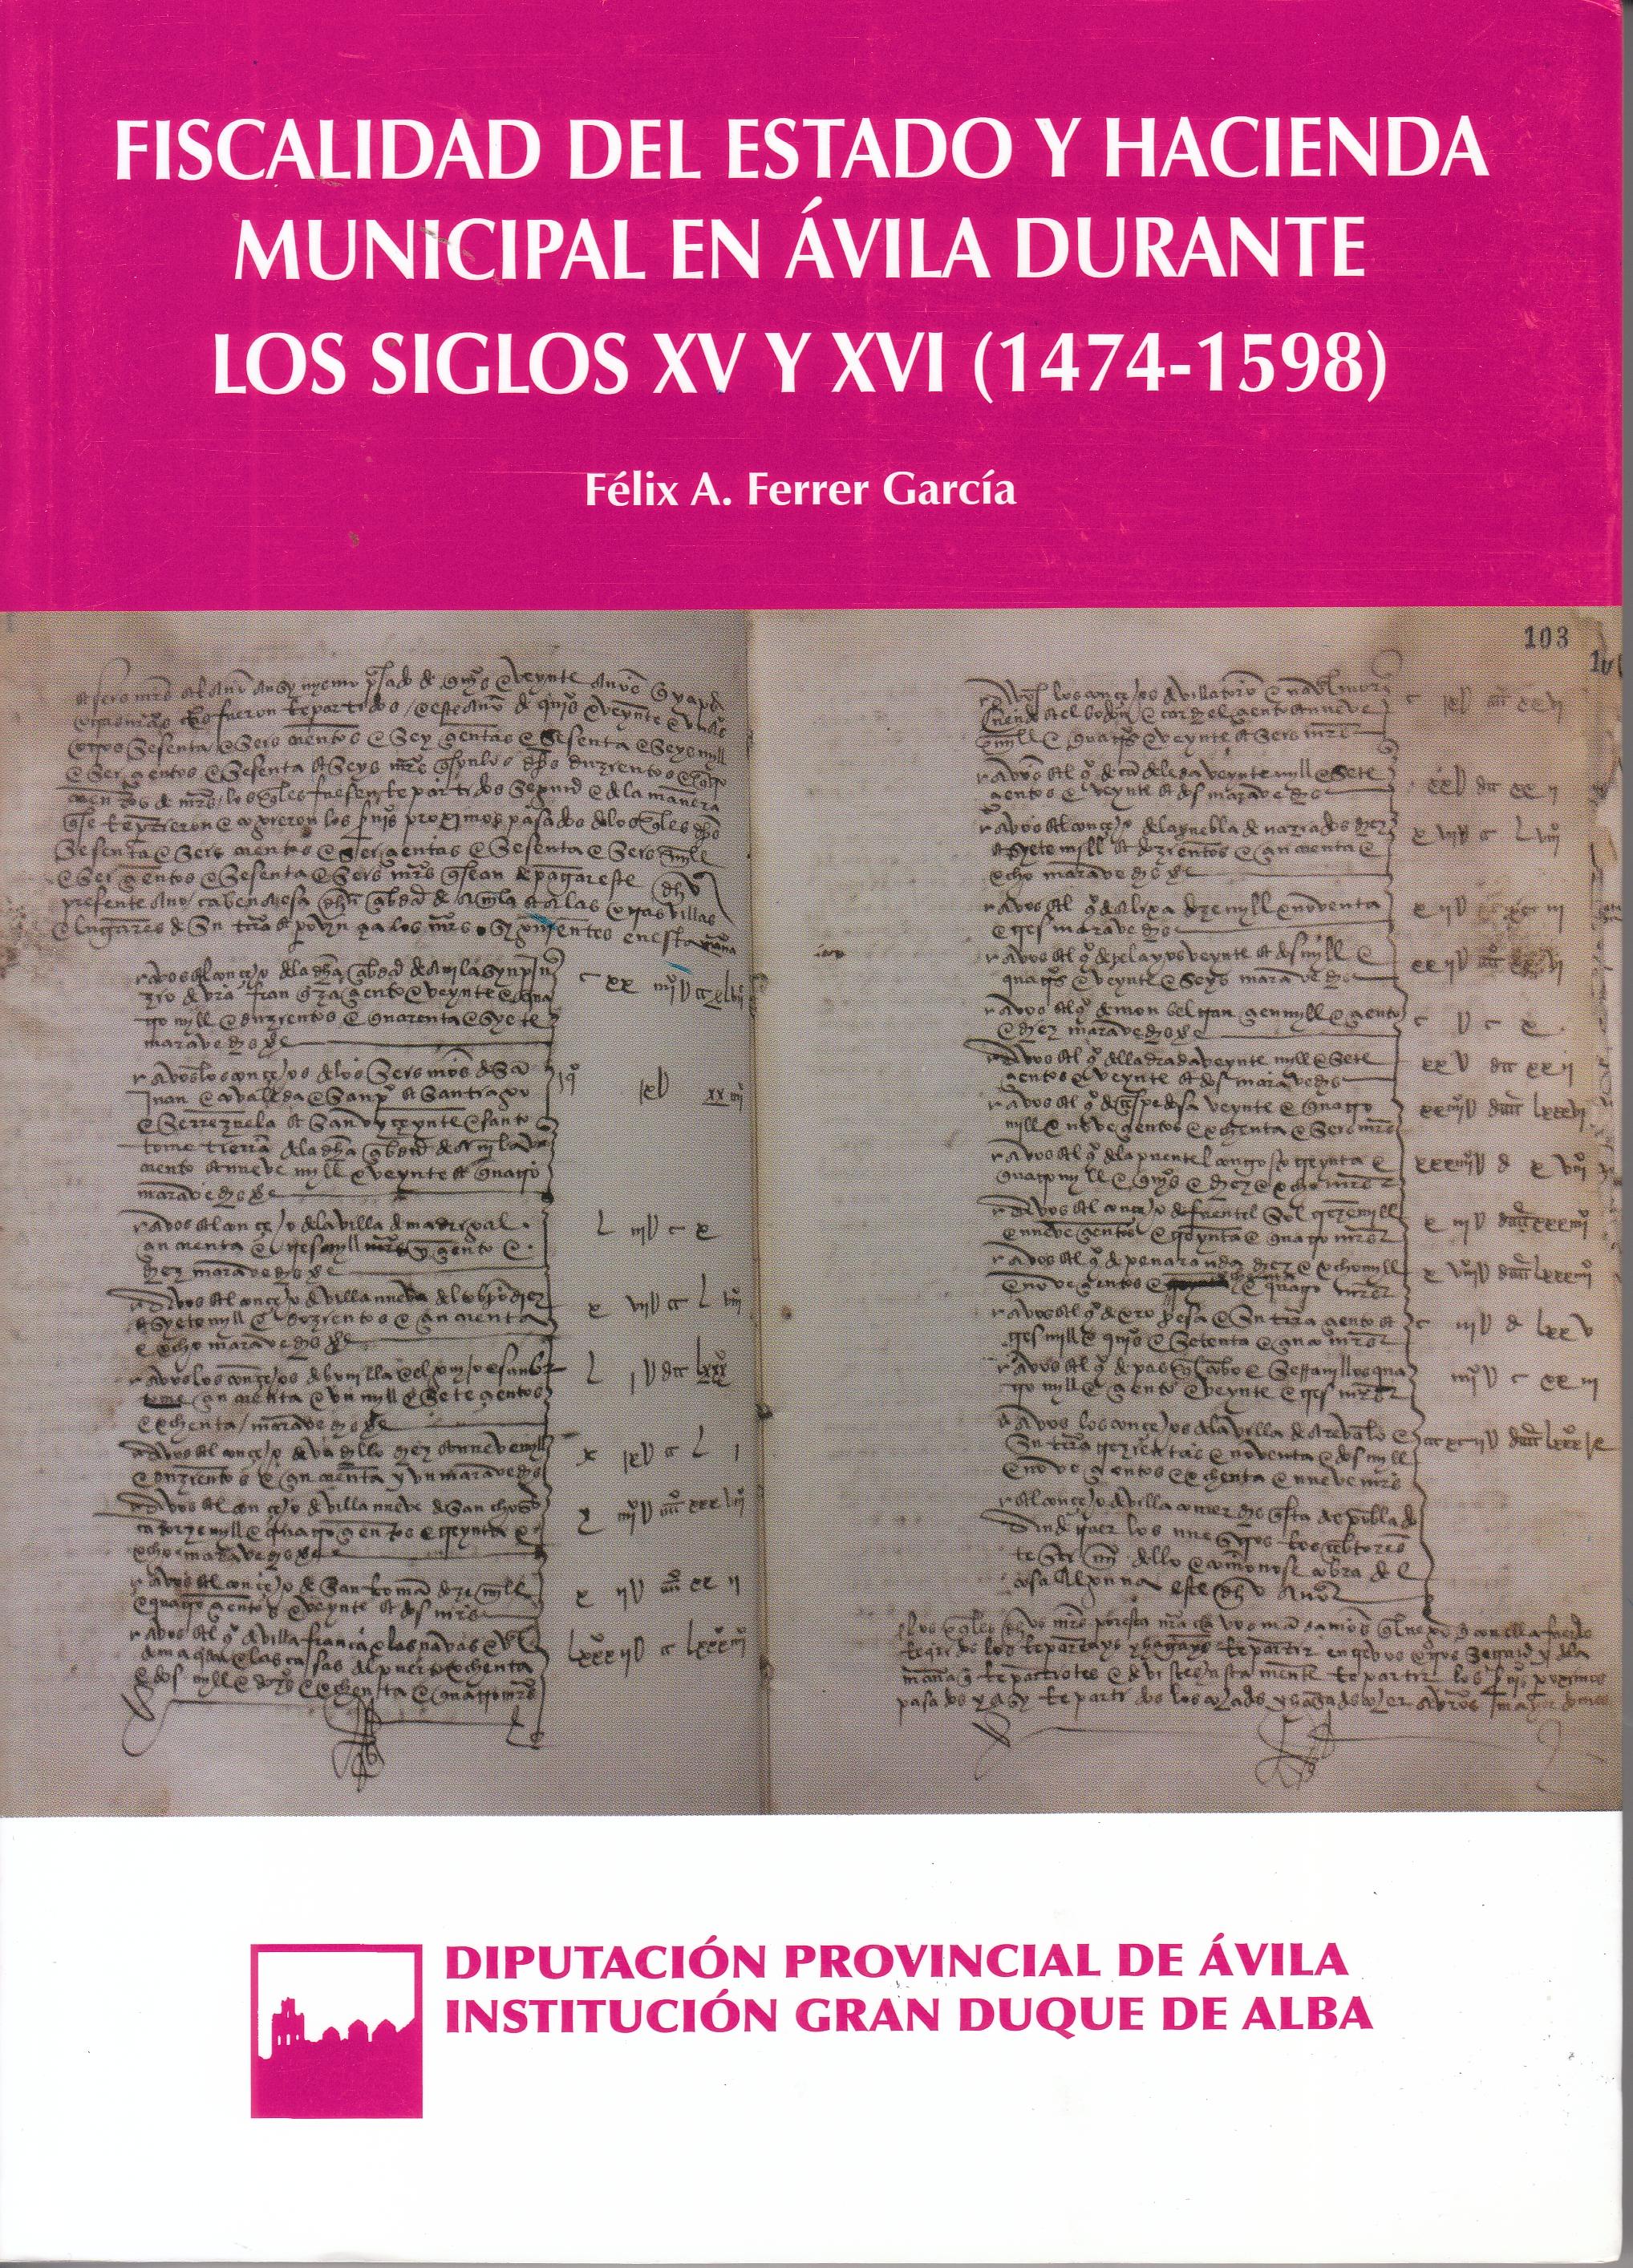 Fiscalidad del Estado y Hacienda municipal en Ávila durante los siglos XV y XVI "1474-1598"